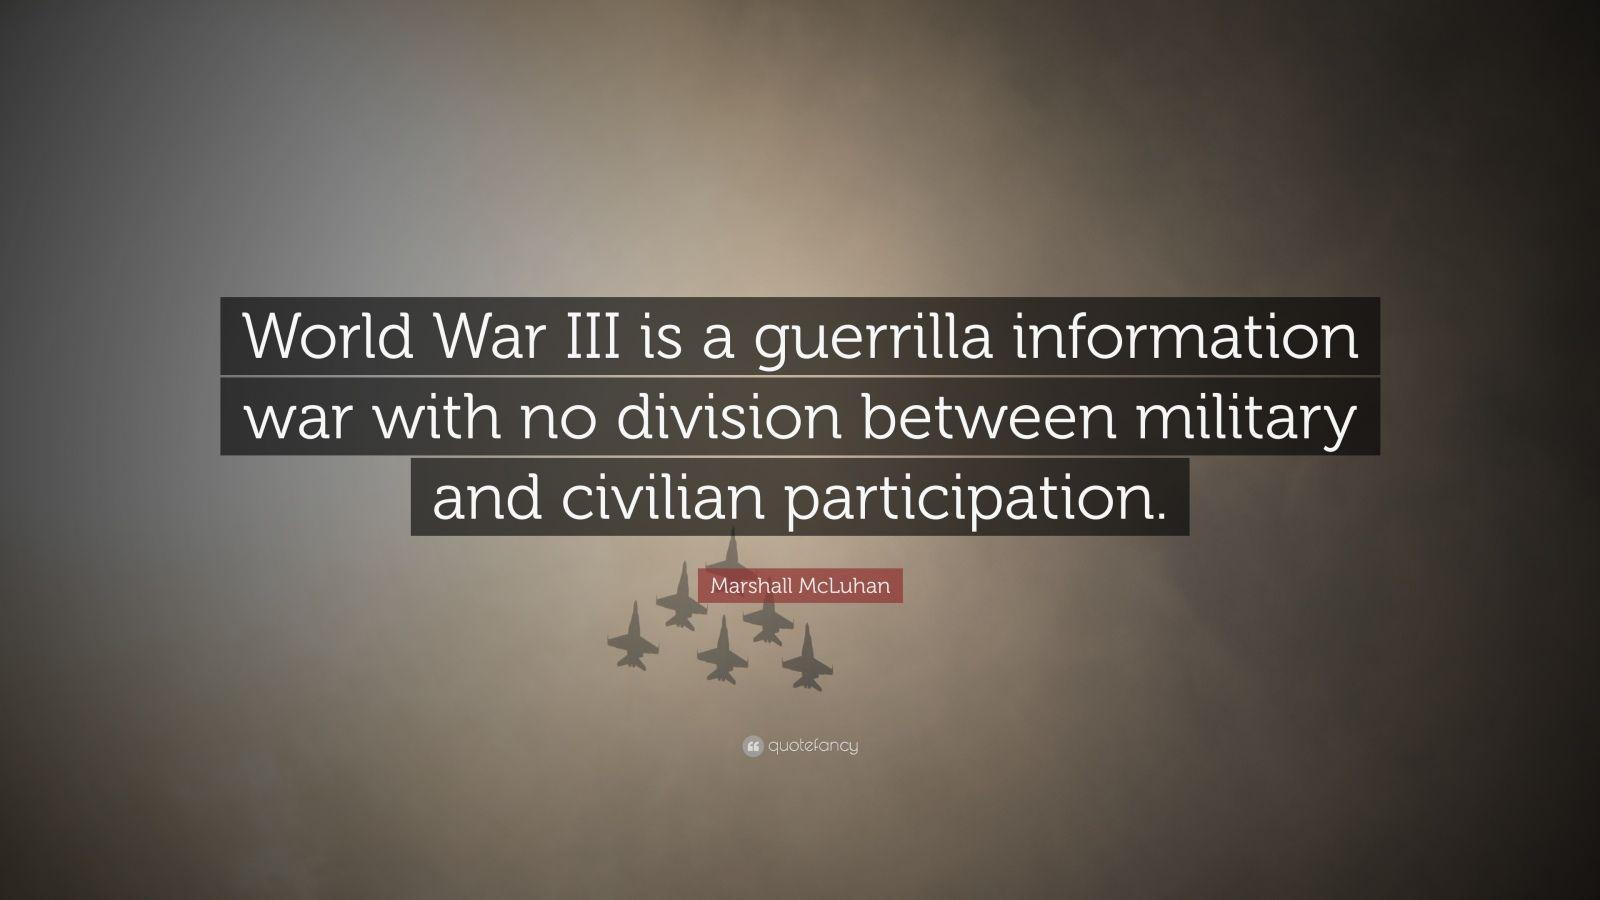 Marshall McLuhan Quote: “World War III is a guerrilla